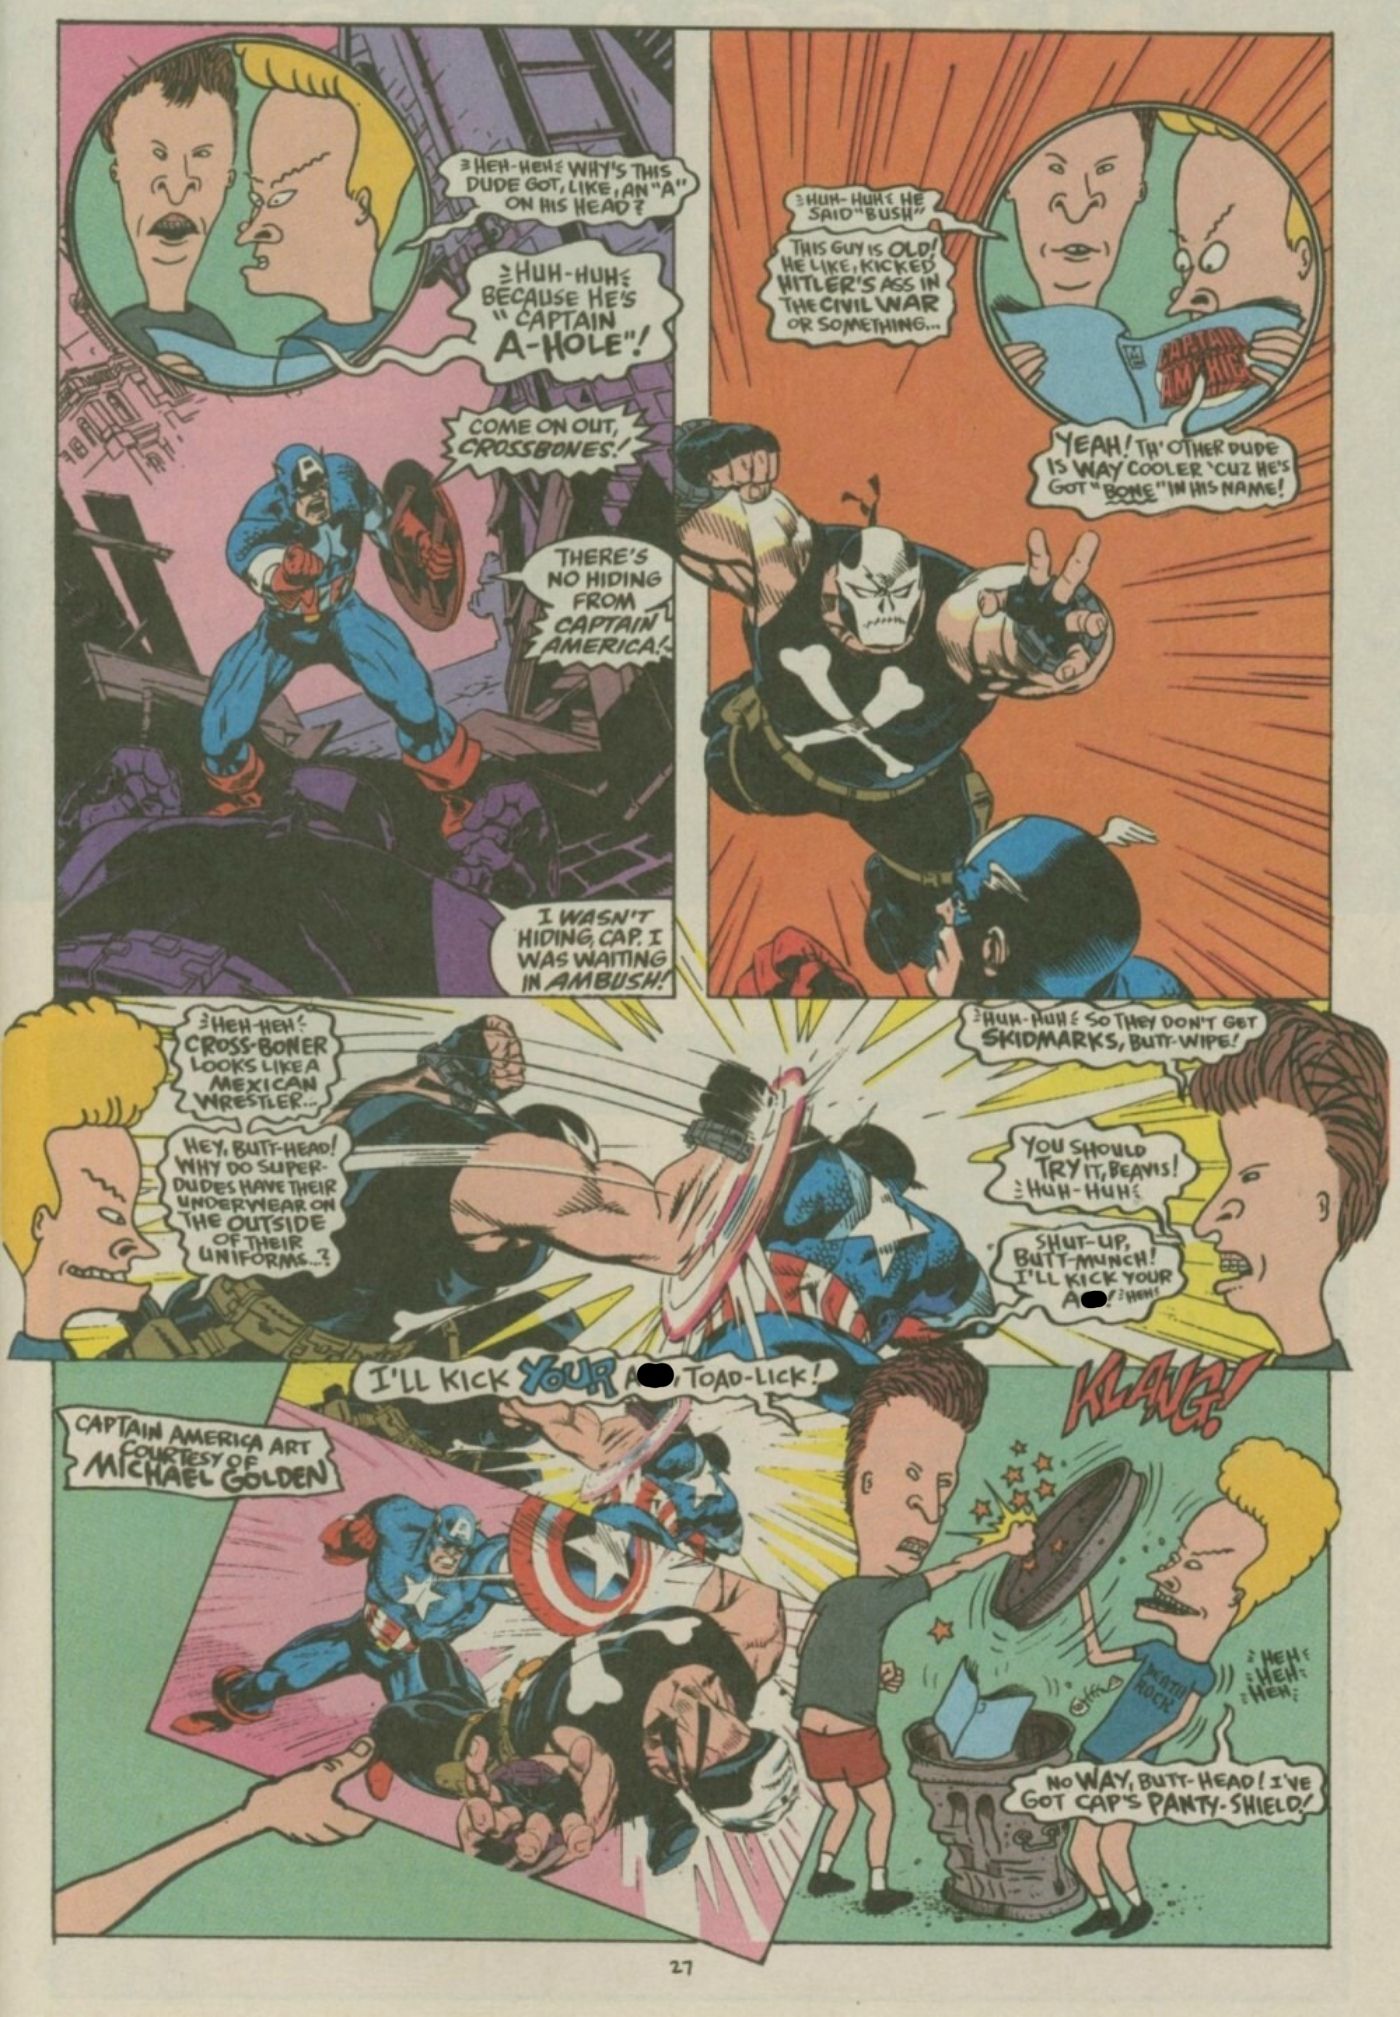 Beavis e Butt-Head lendo e comentando uma história em quadrinhos do Capitão América.